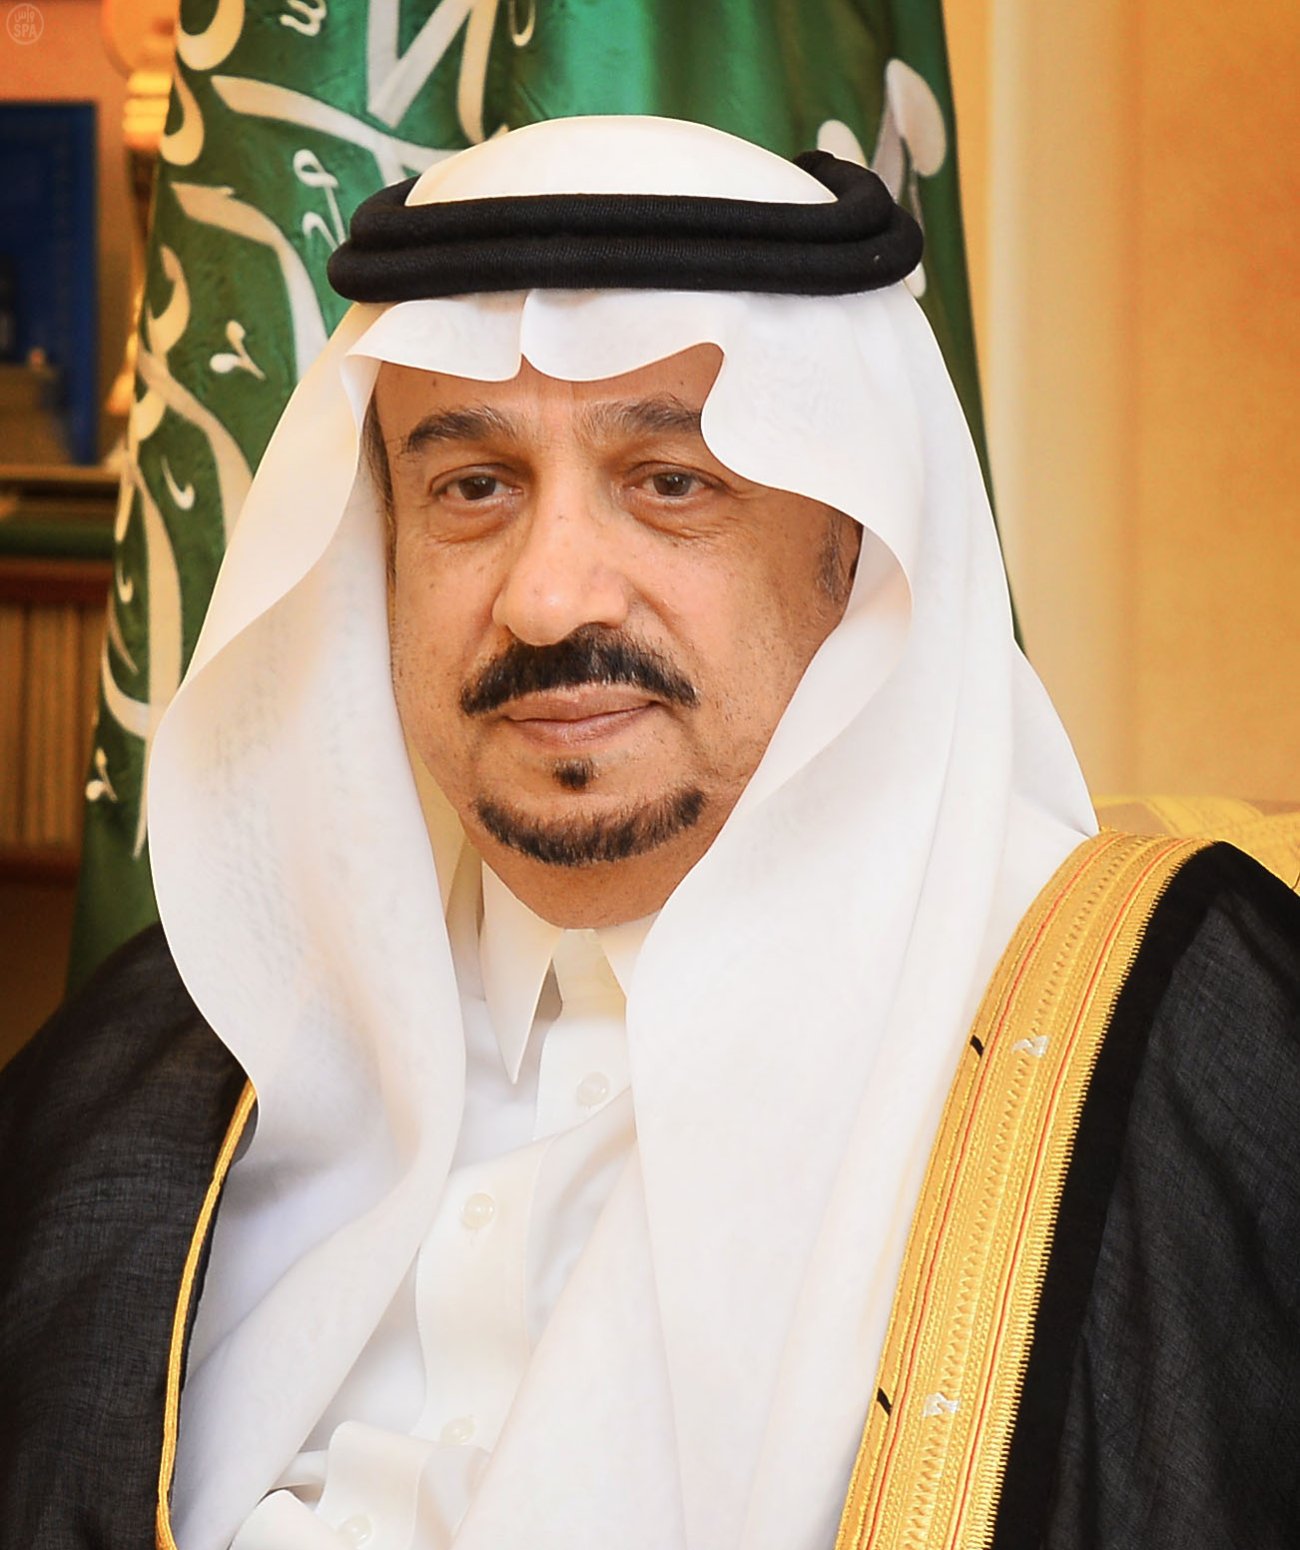 سمو الأمير فيصل بن بندر يستقبل رئيس وأعضاء الغرفة التجارية بالرياض